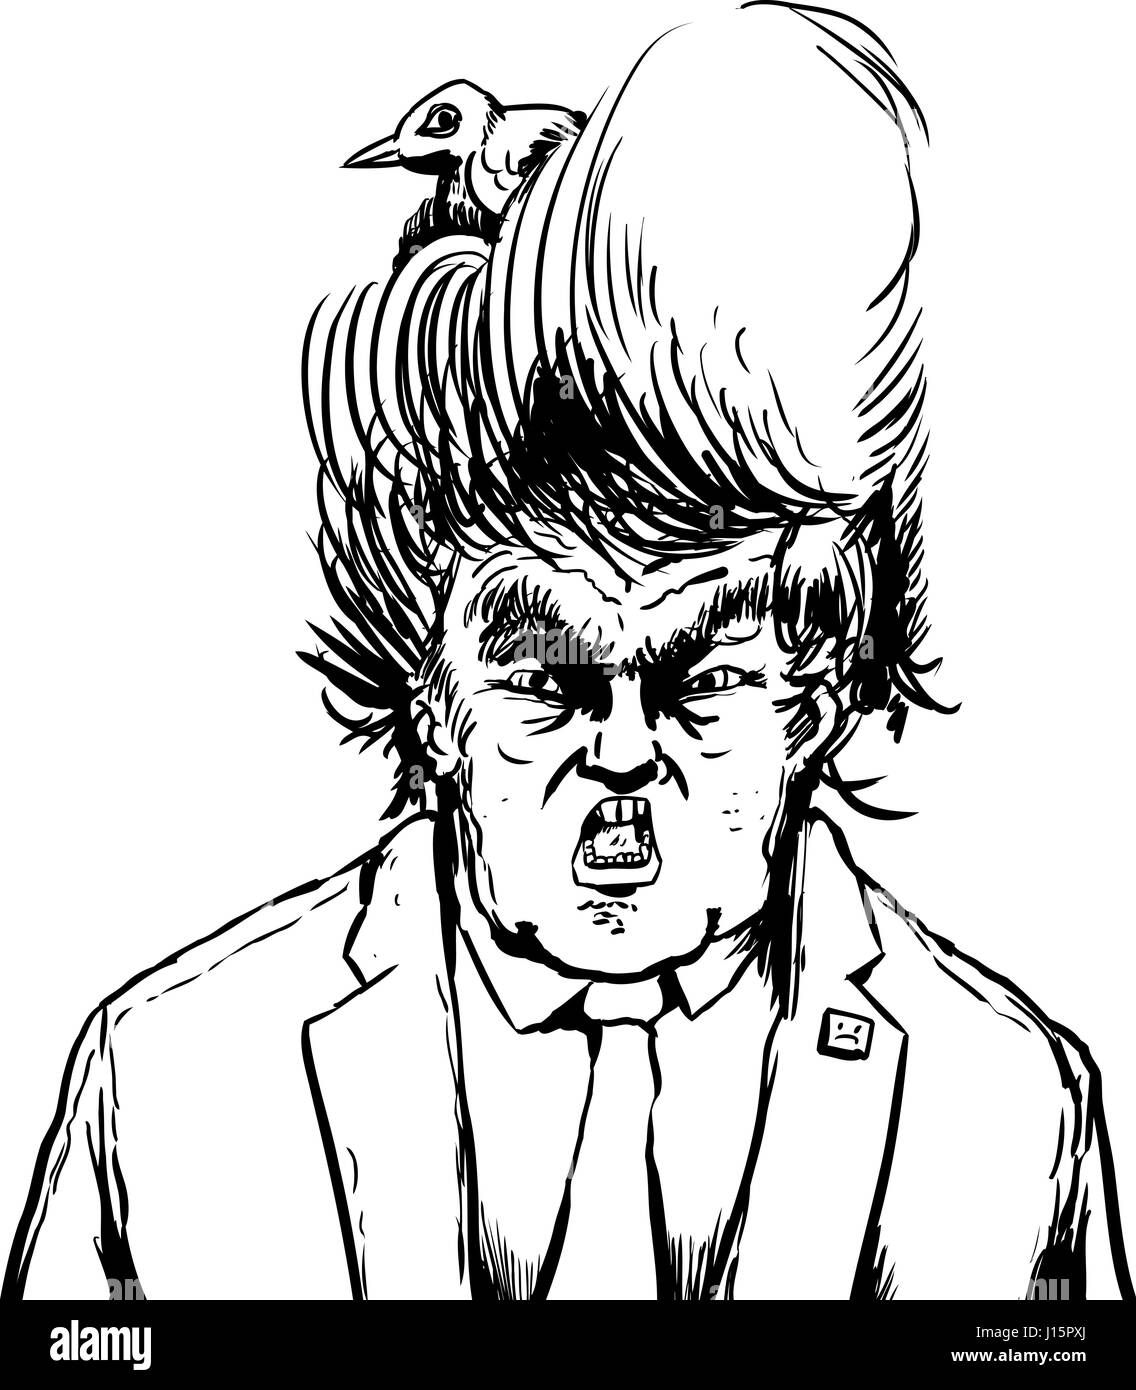 Aprile 18, 2017. La caricatura contorno di urla Donald Trump di nidificazione di uccelli nei suoi capelli Foto Stock